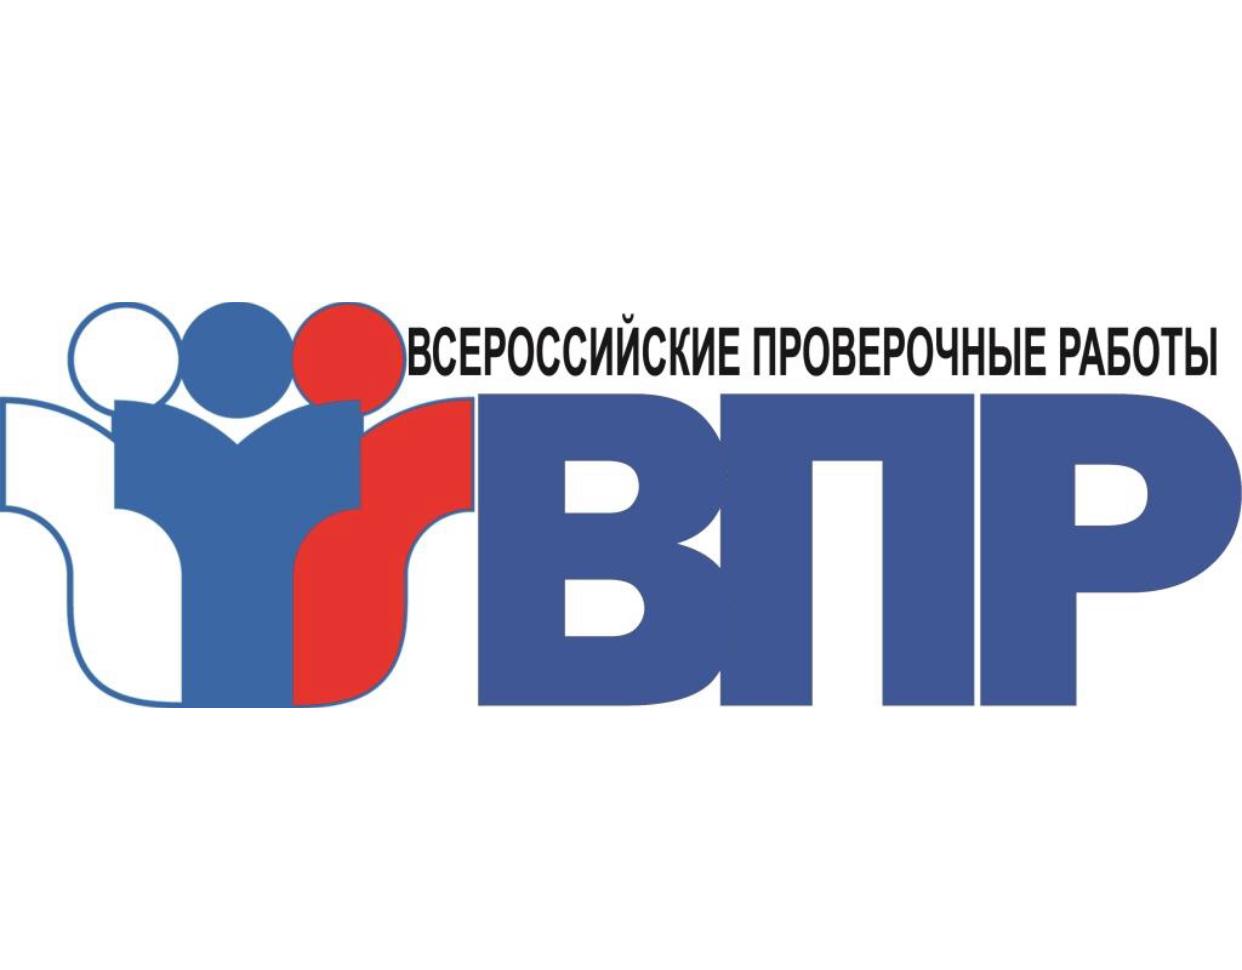 С 15 марта текущего года в муниципальных общеобразовательных учреждениях начинаются всероссийские проверочные работы